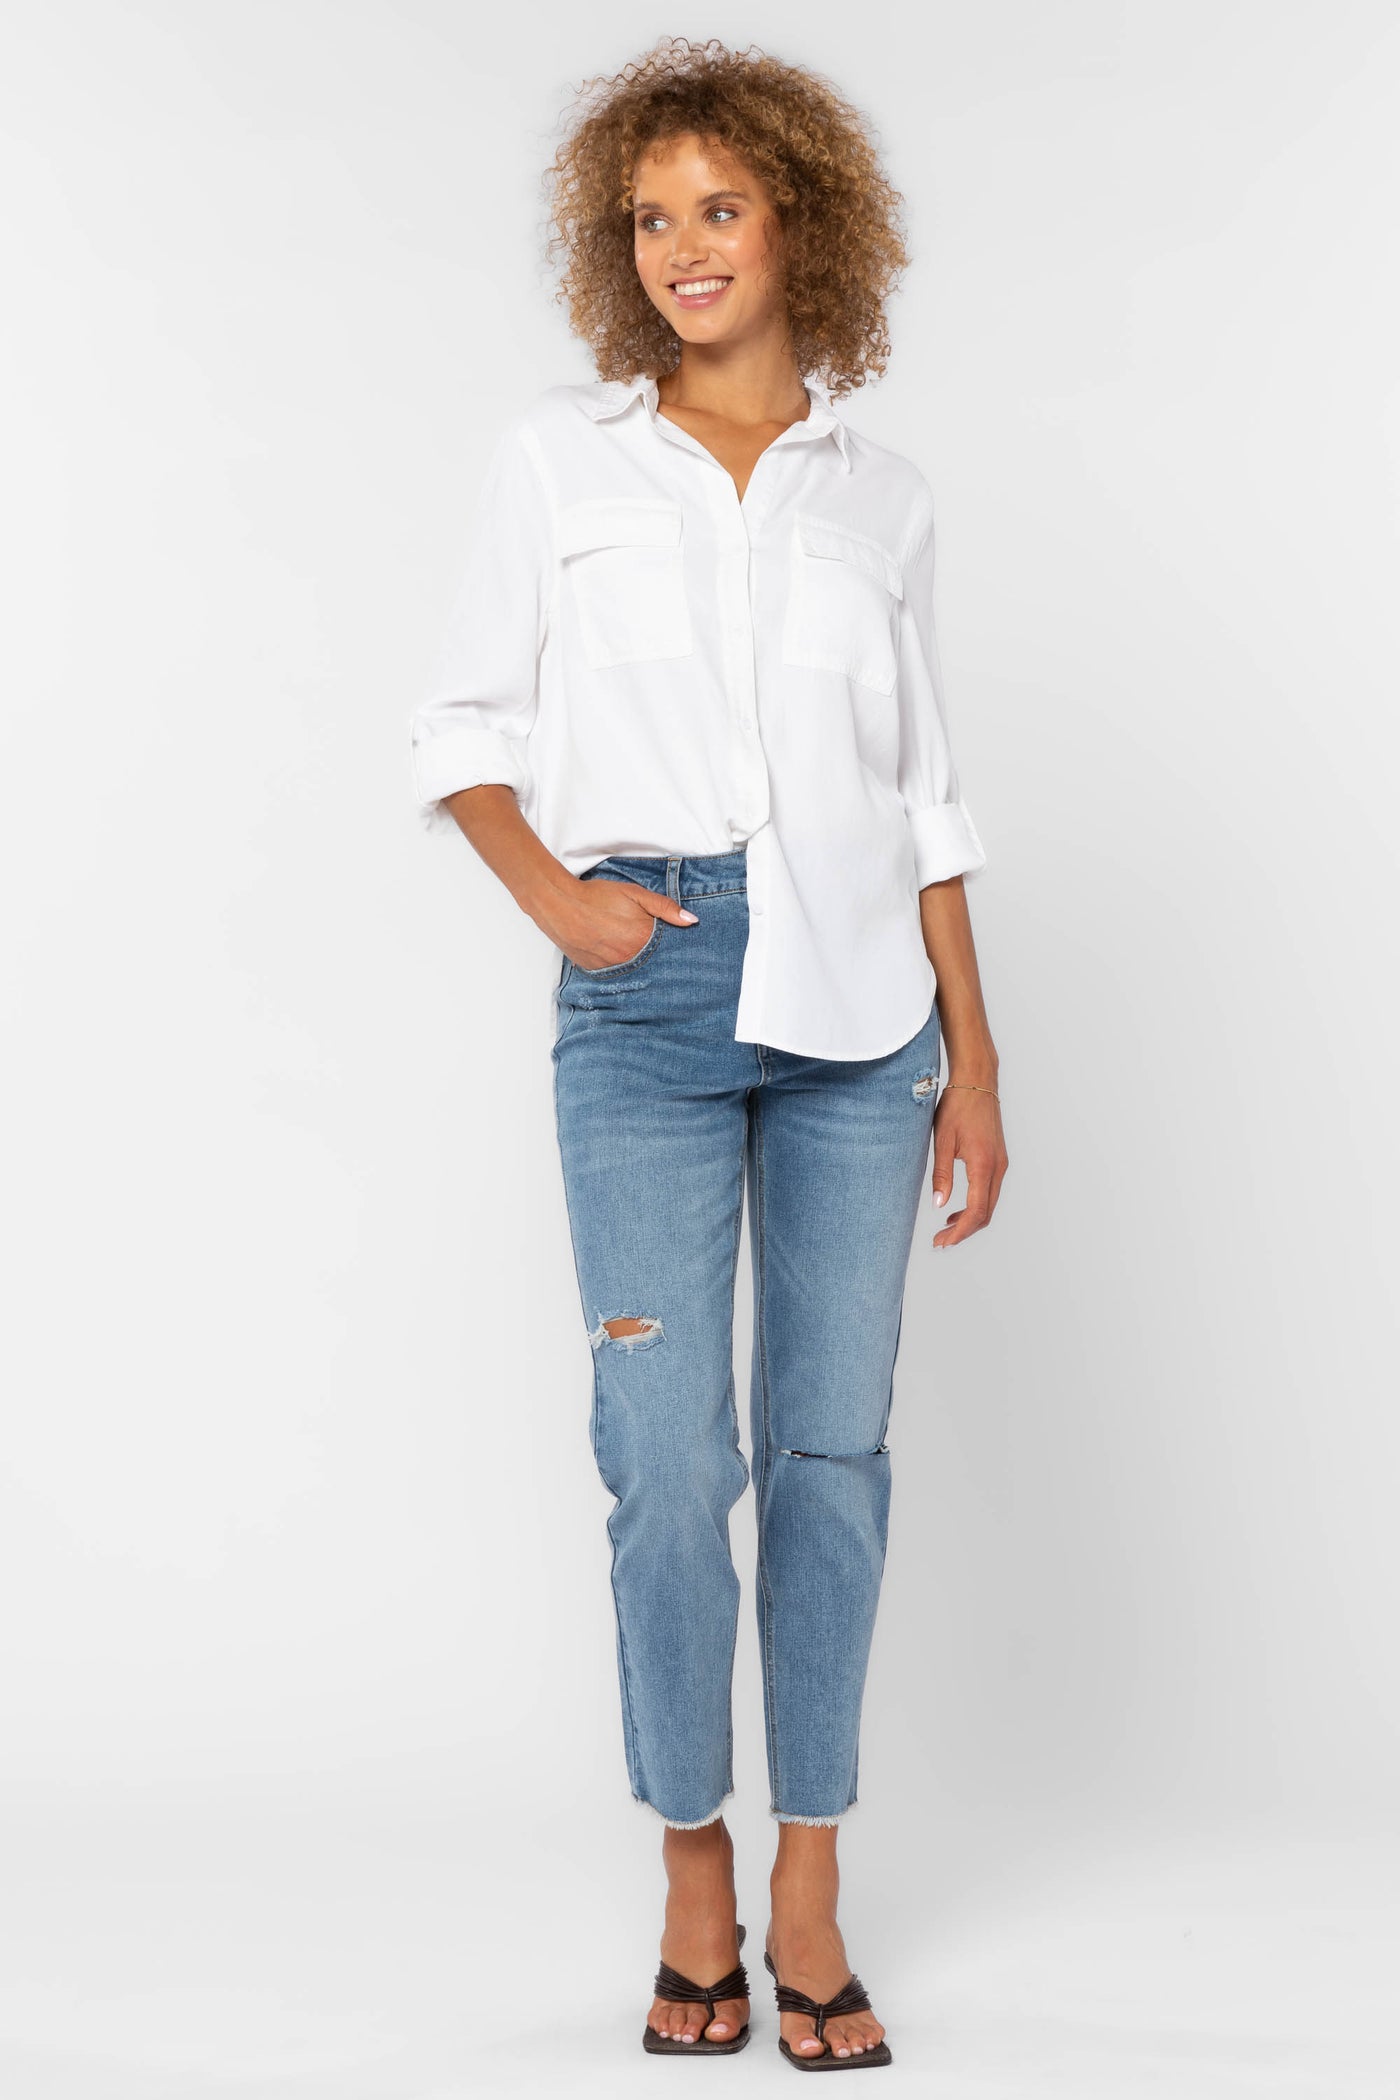 Talma White Shirt - Tops - Velvet Heart Clothing